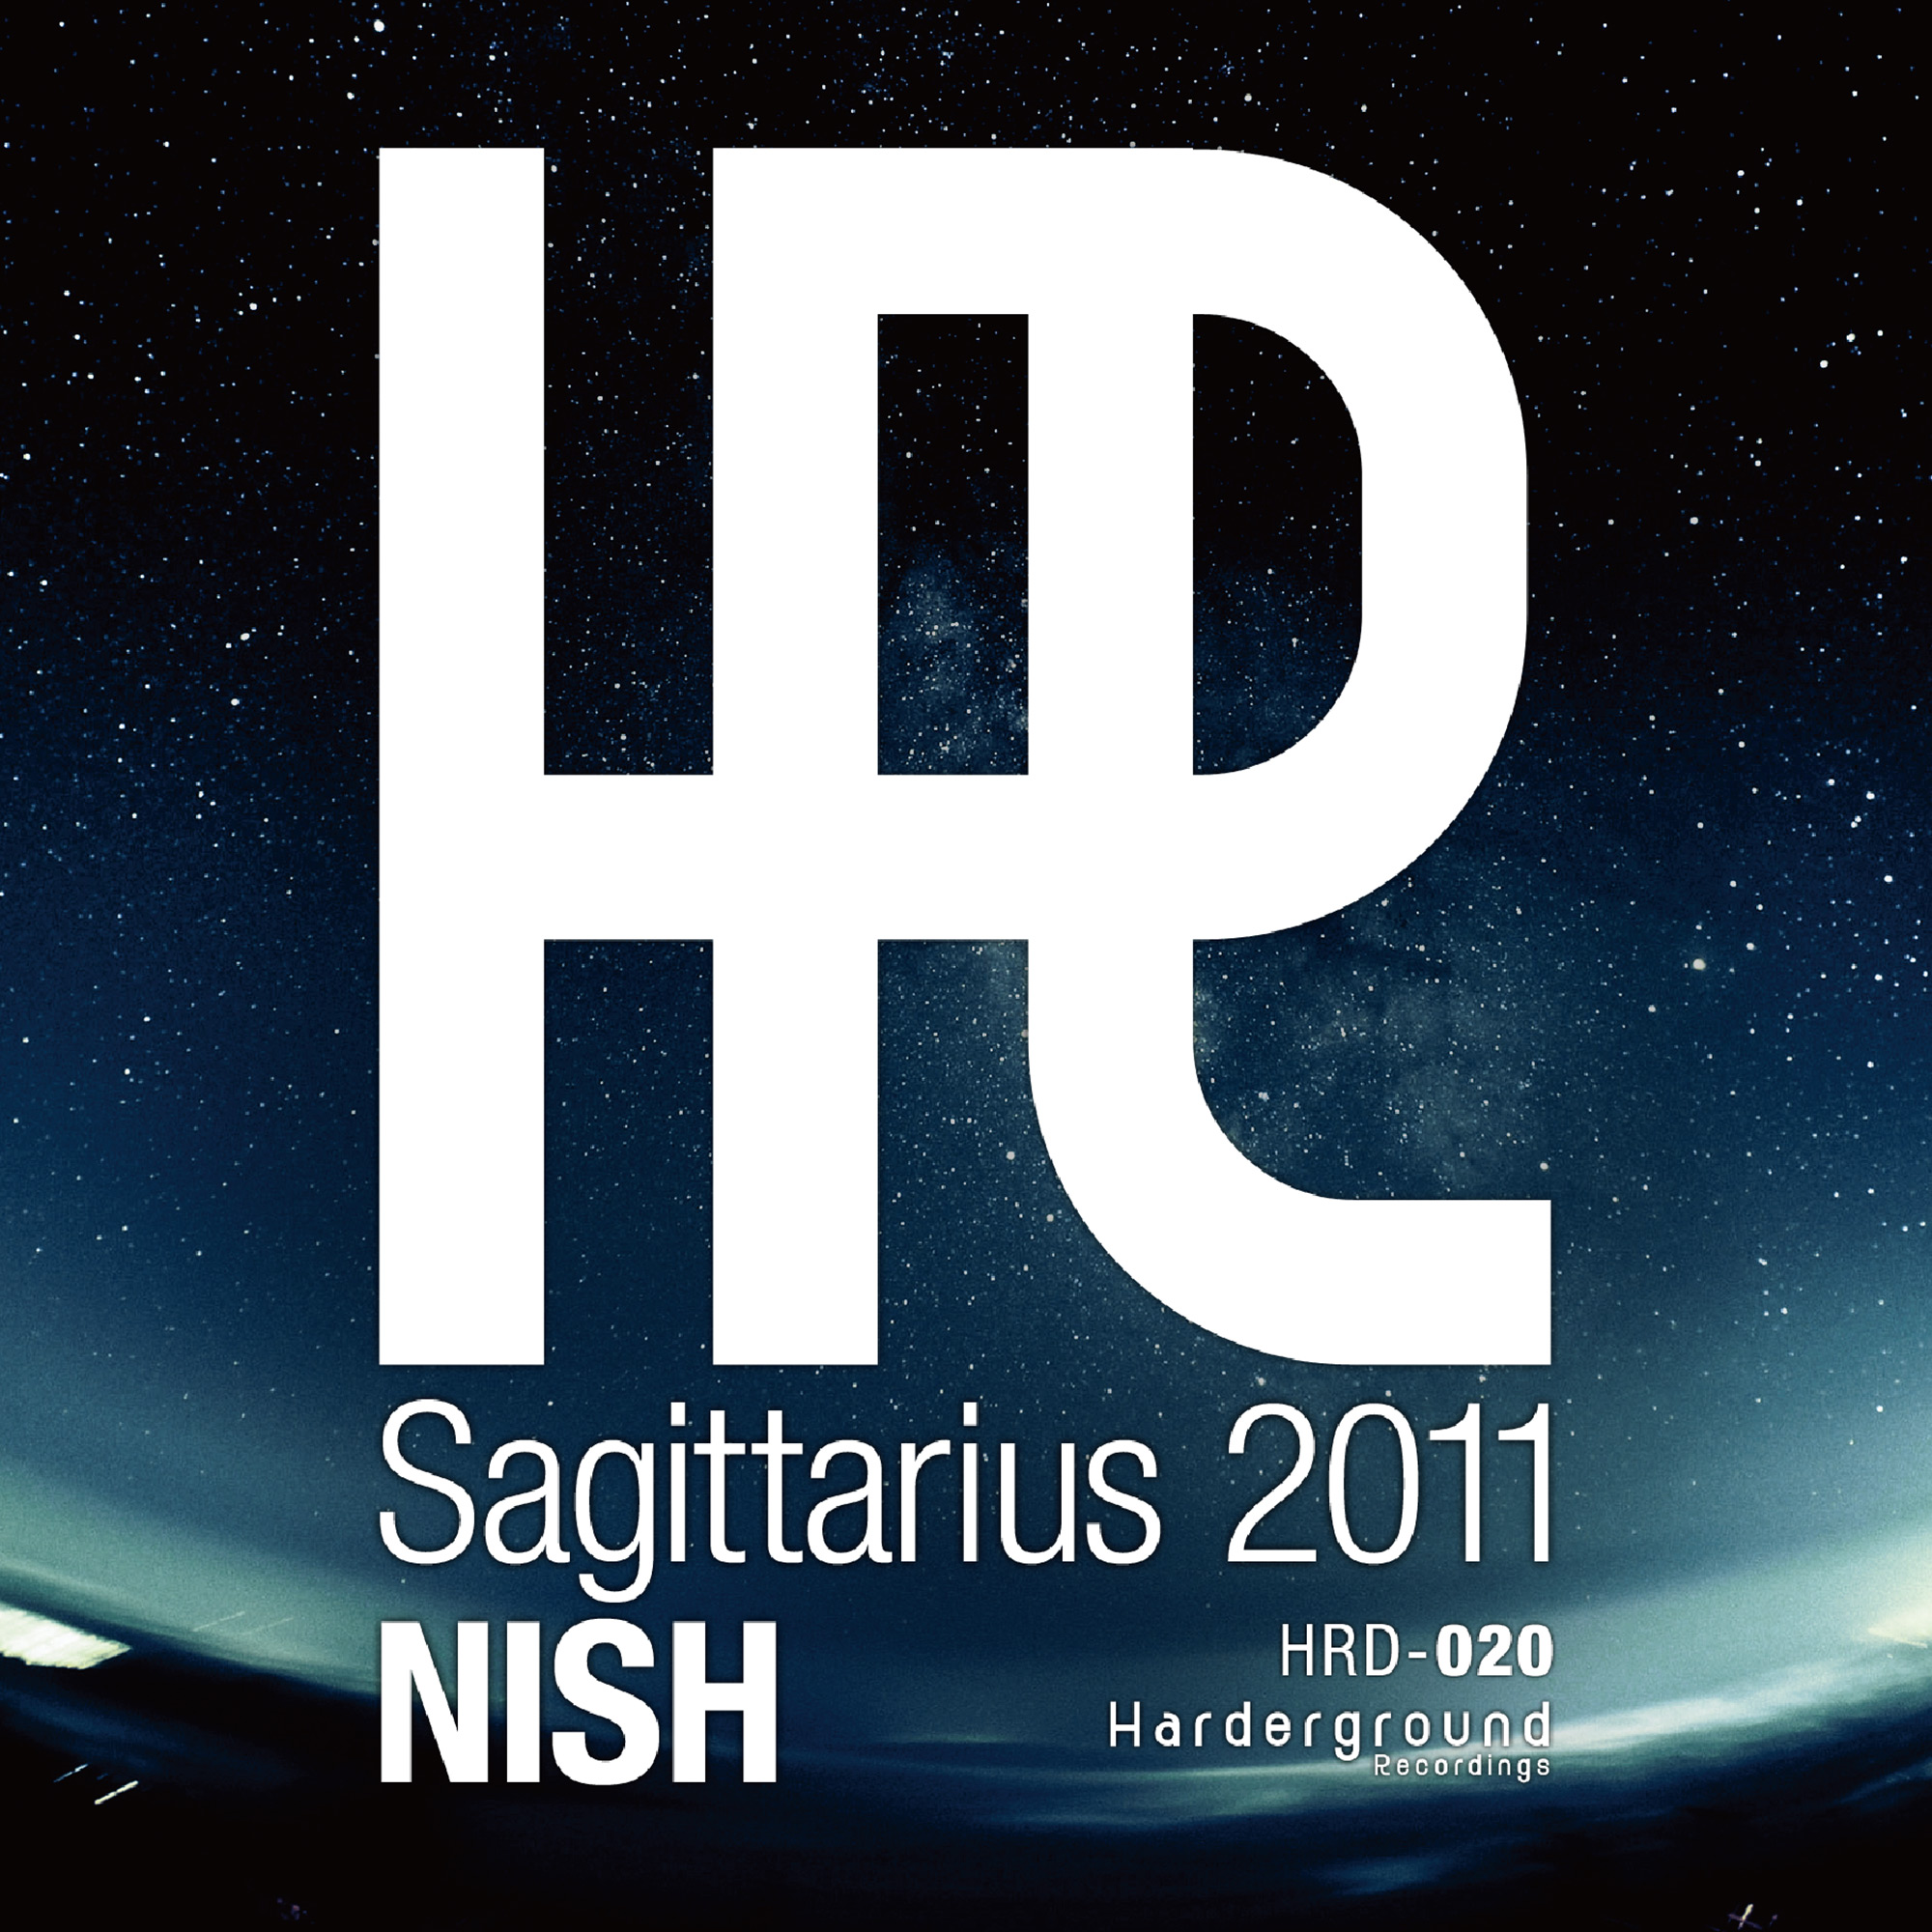 Sagittarius 2011